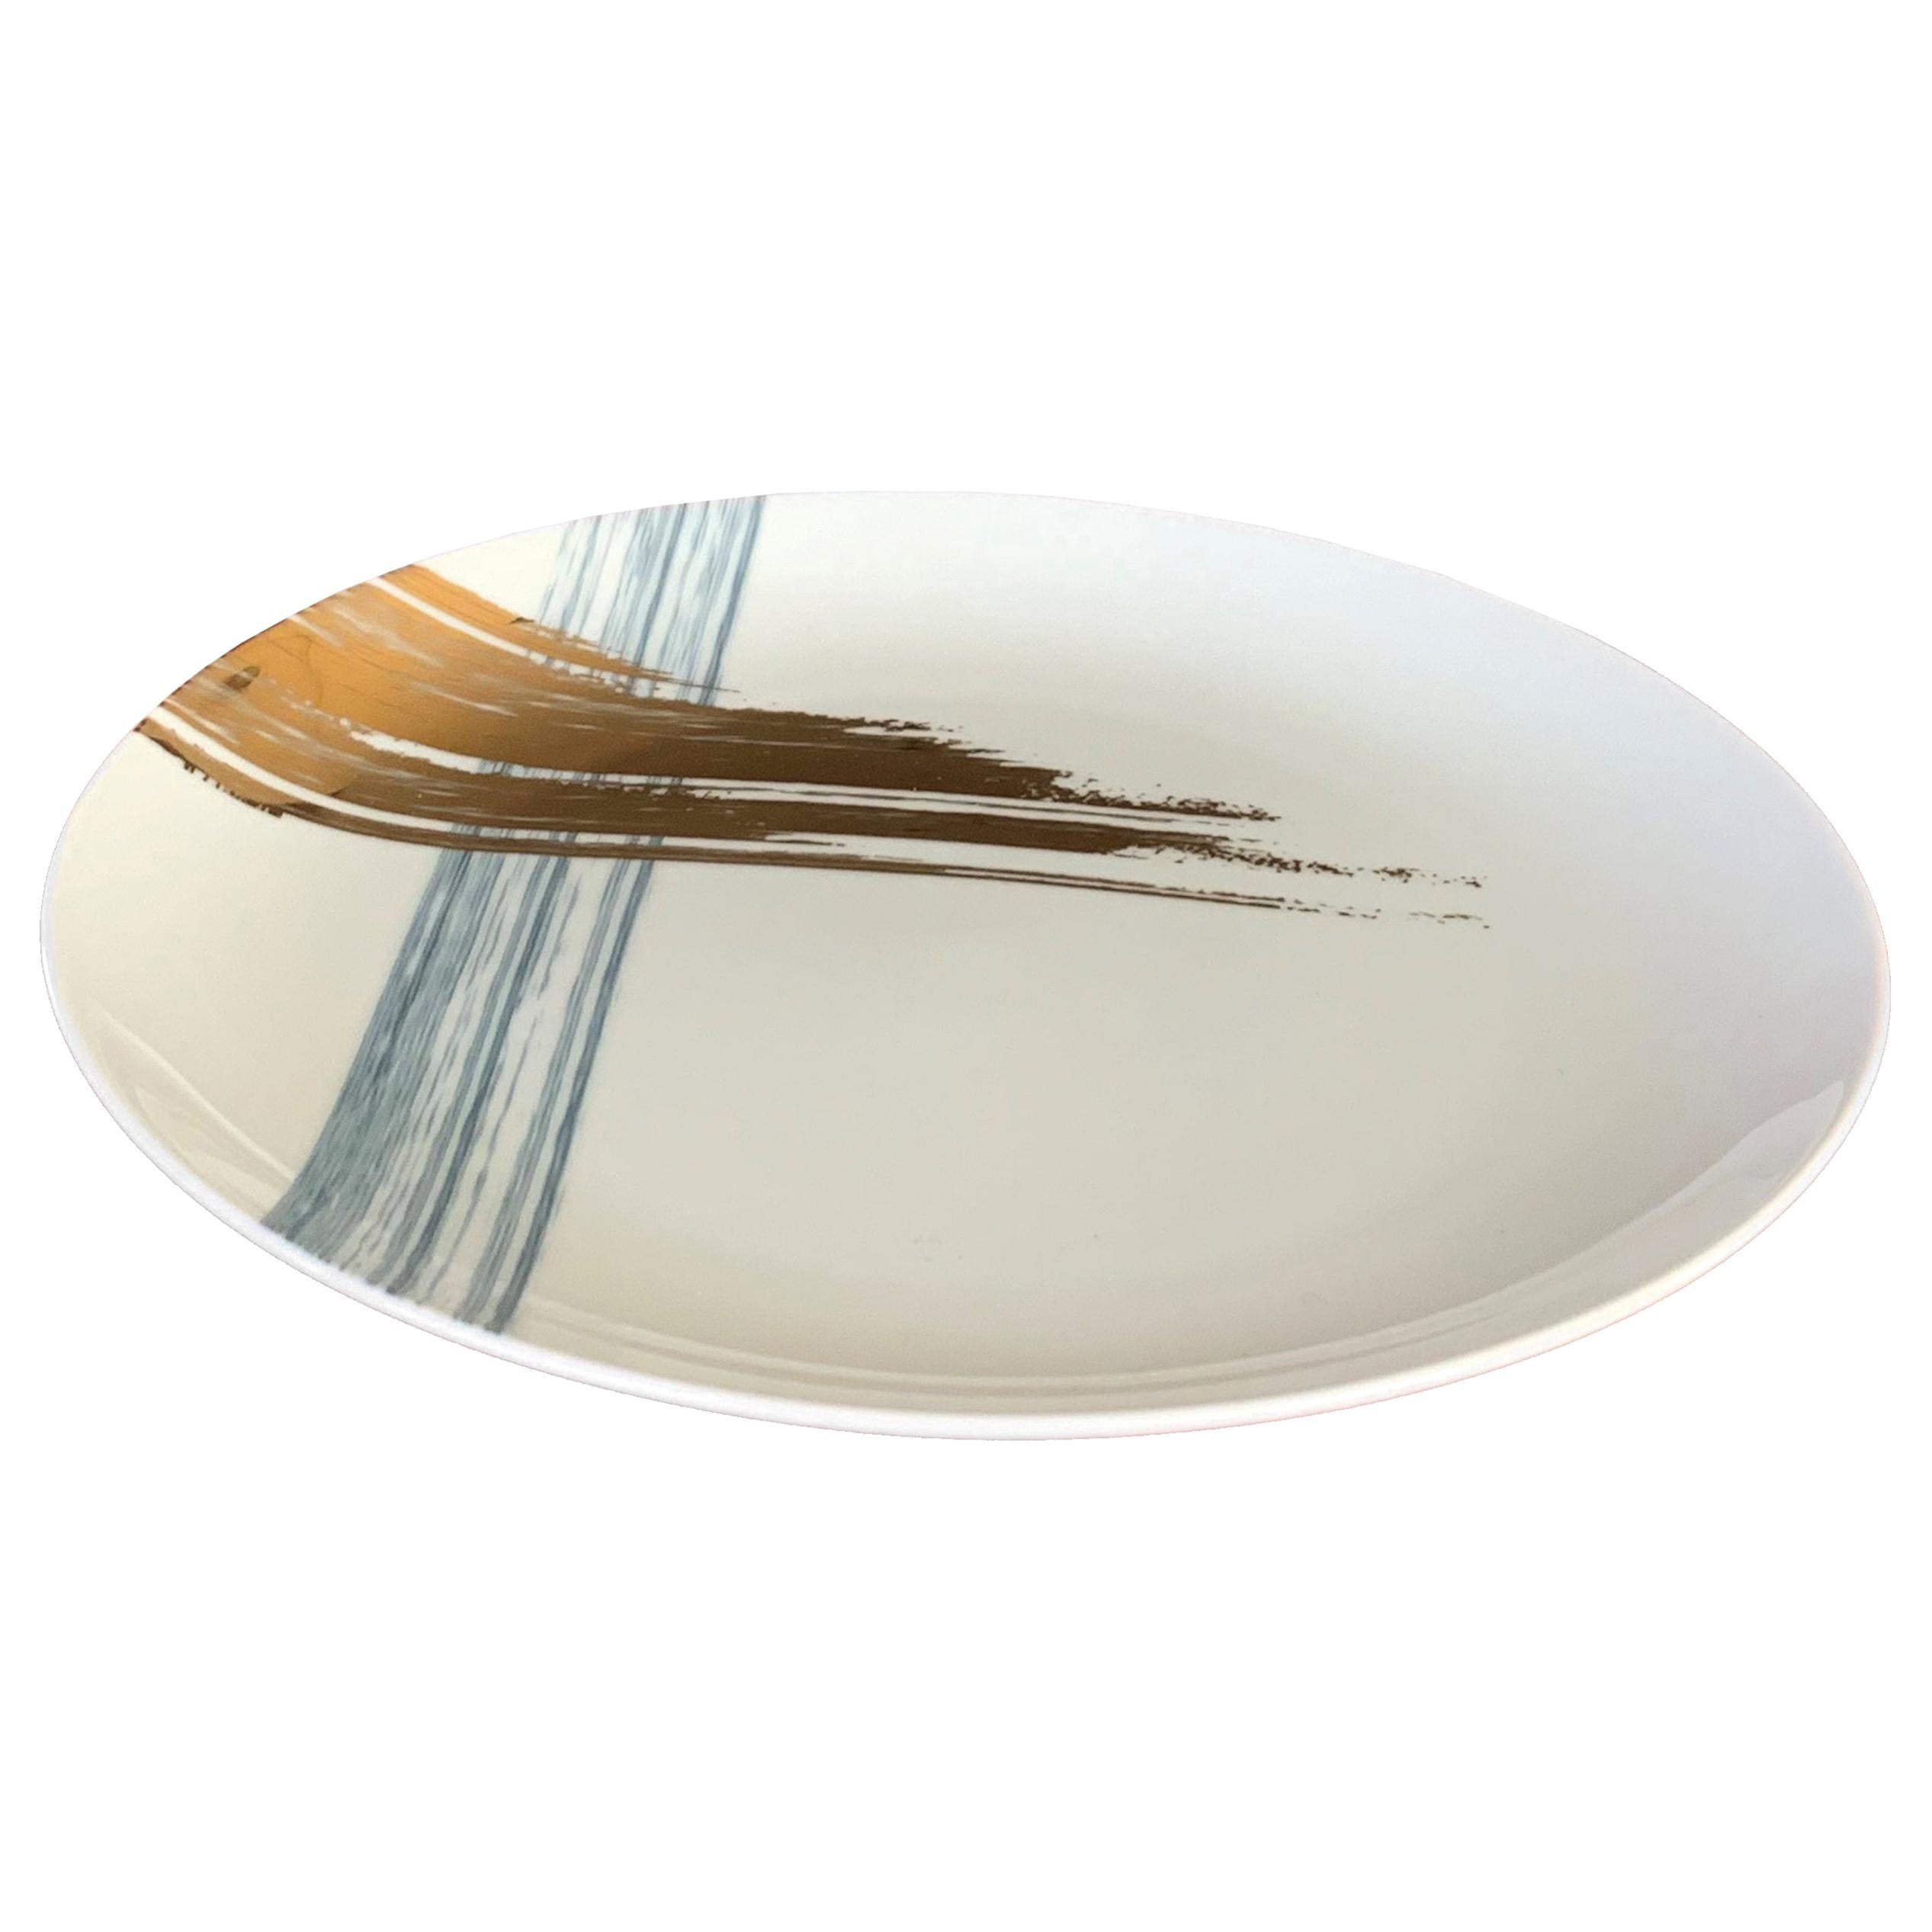 Set of 2 Dinner Plate Artisan Brush André Fu Living Tableware New For Sale